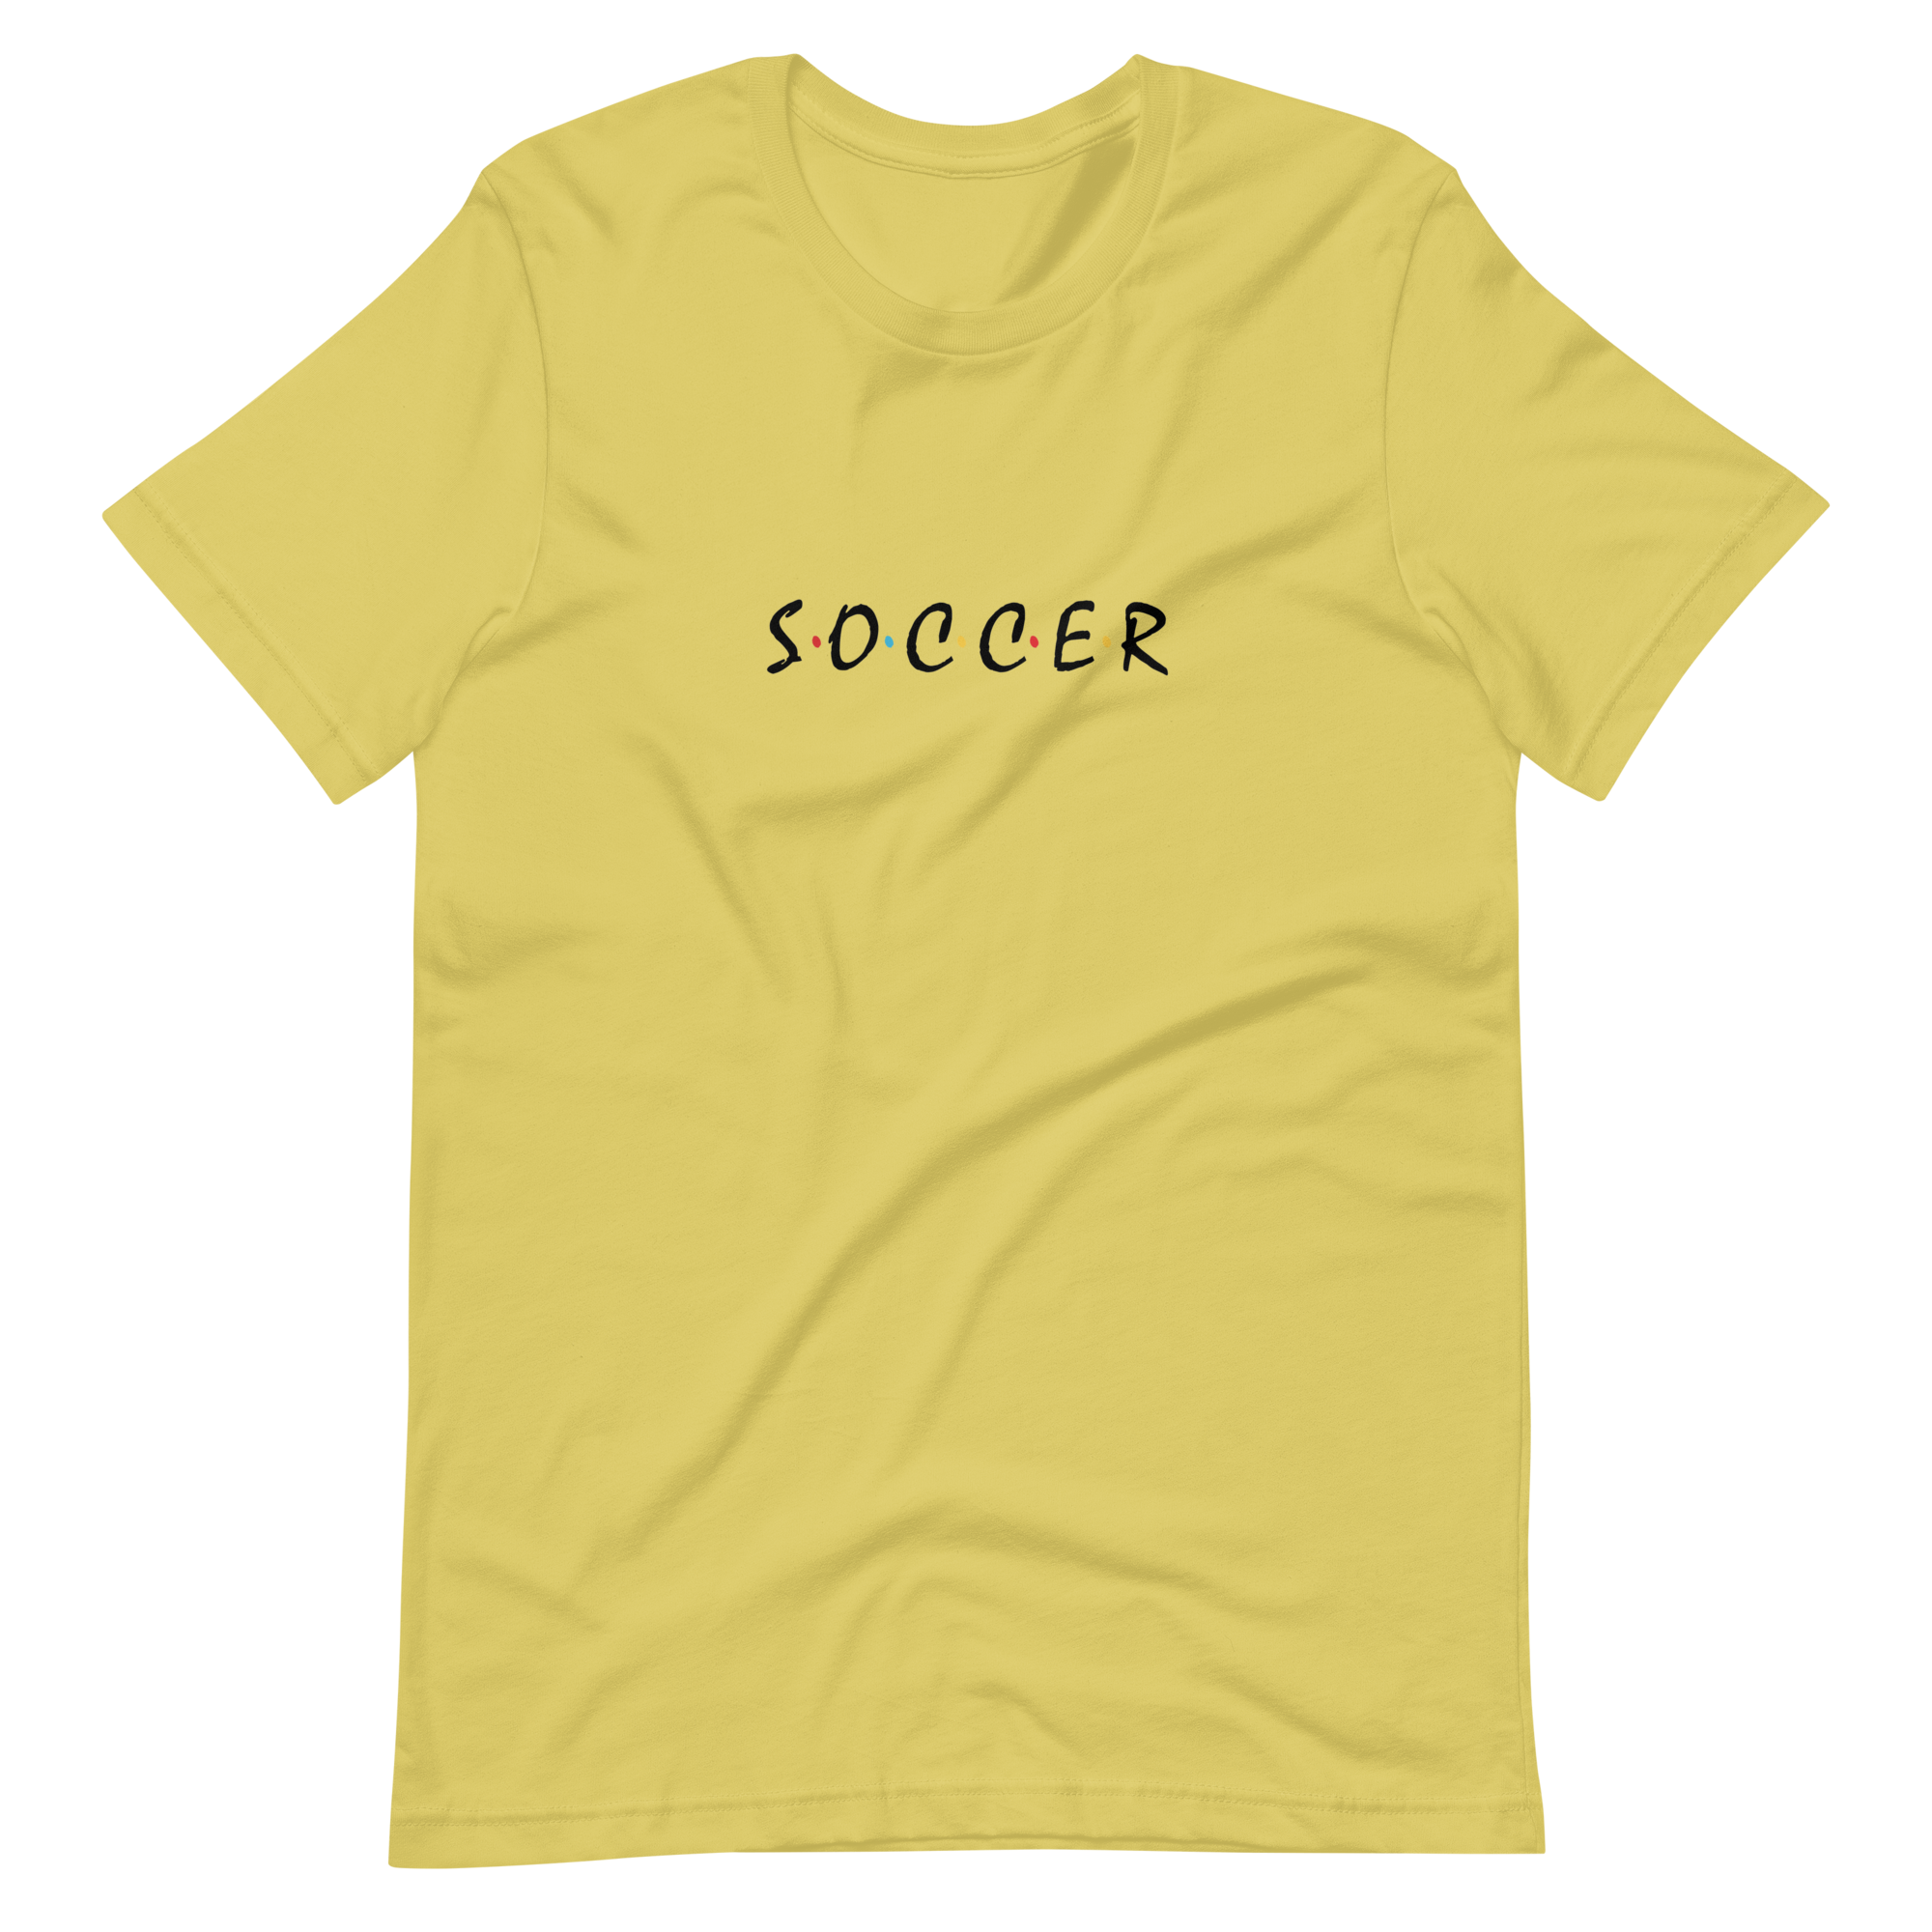 Soccer Friends T-Shirt